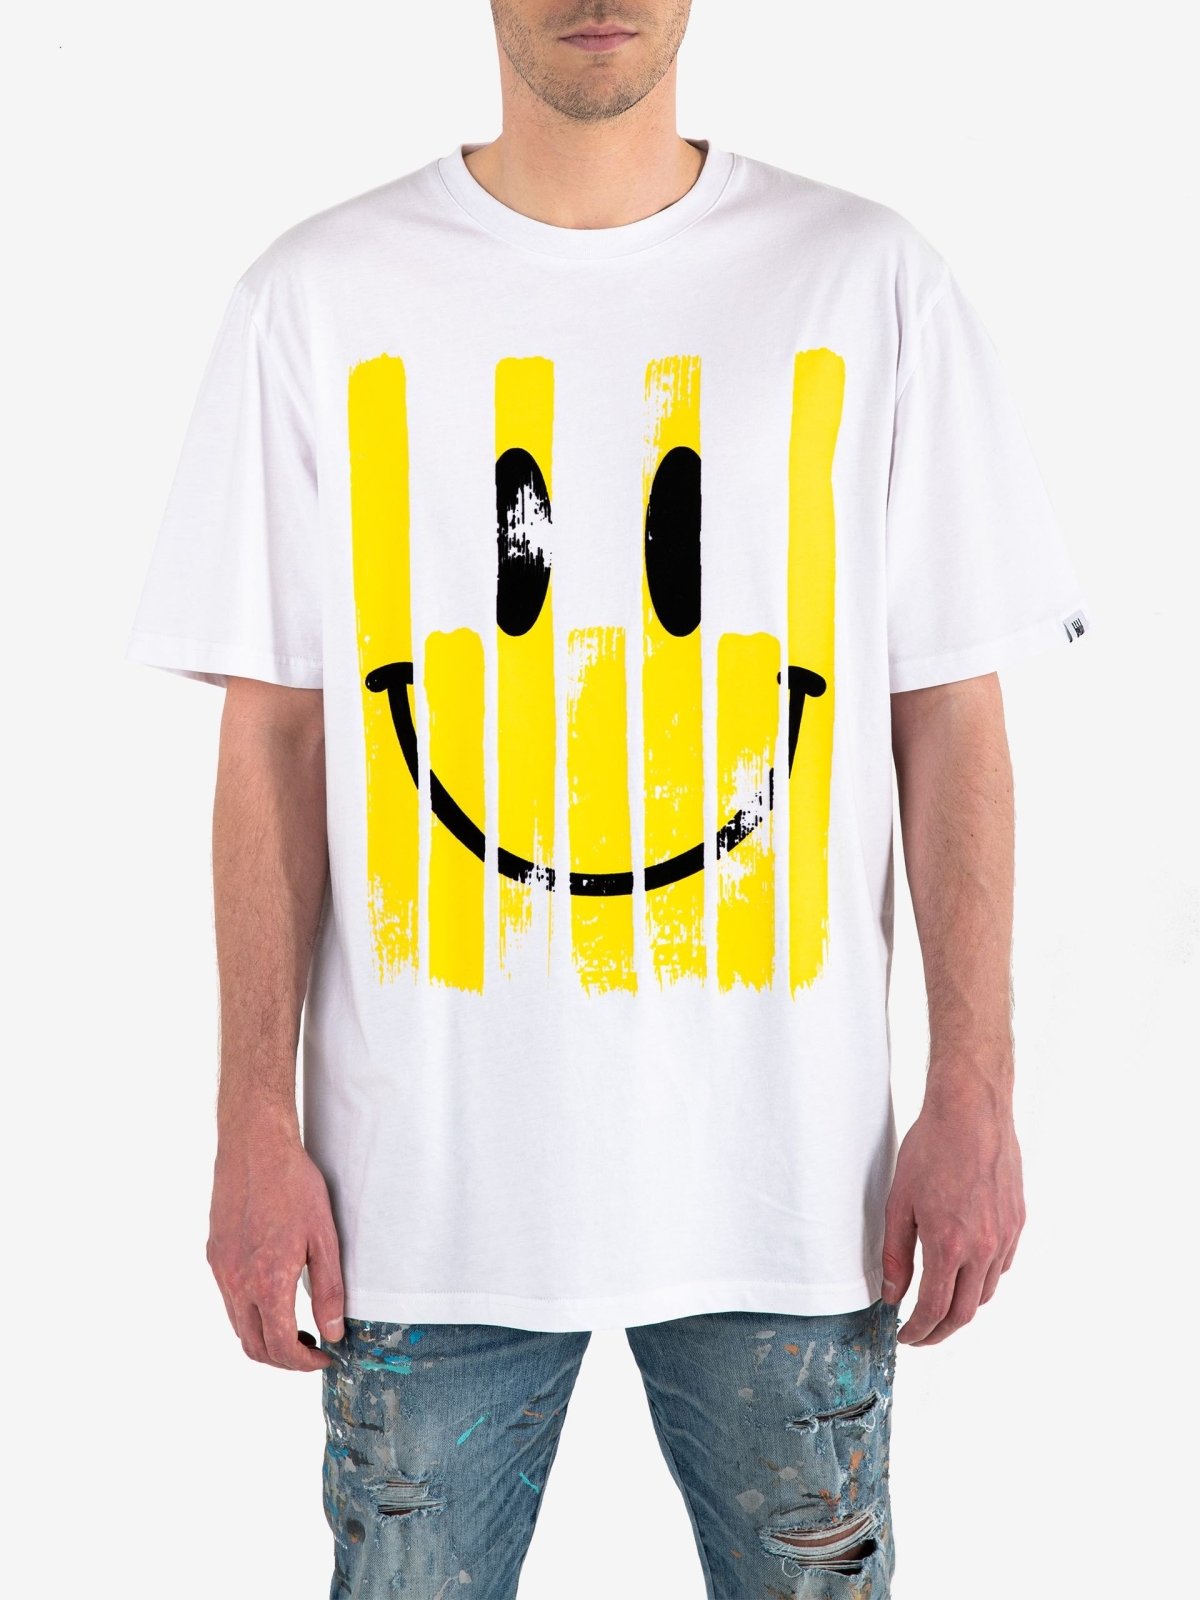 Rave Culture Smiley T-Shirt - Rave Culture Shop